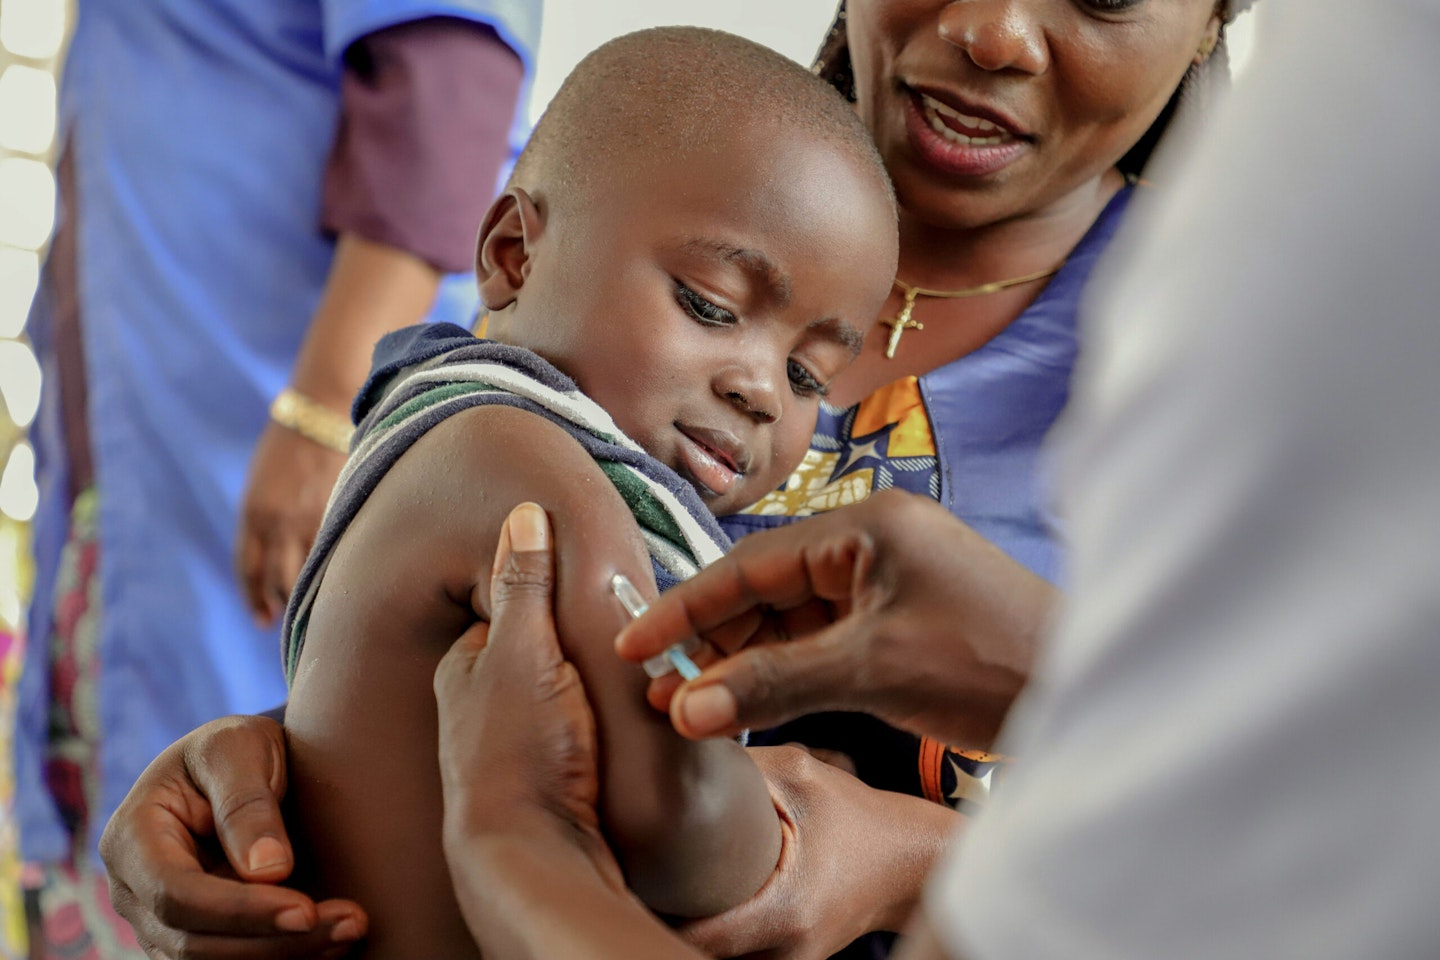 Ydmyg Udvikle forklare Mæslingevaccine har reddet 56 millioner liv: ”Det er en de mest effektive  sygdomsindsatser i verden” | Verdens Bedste Nyheder